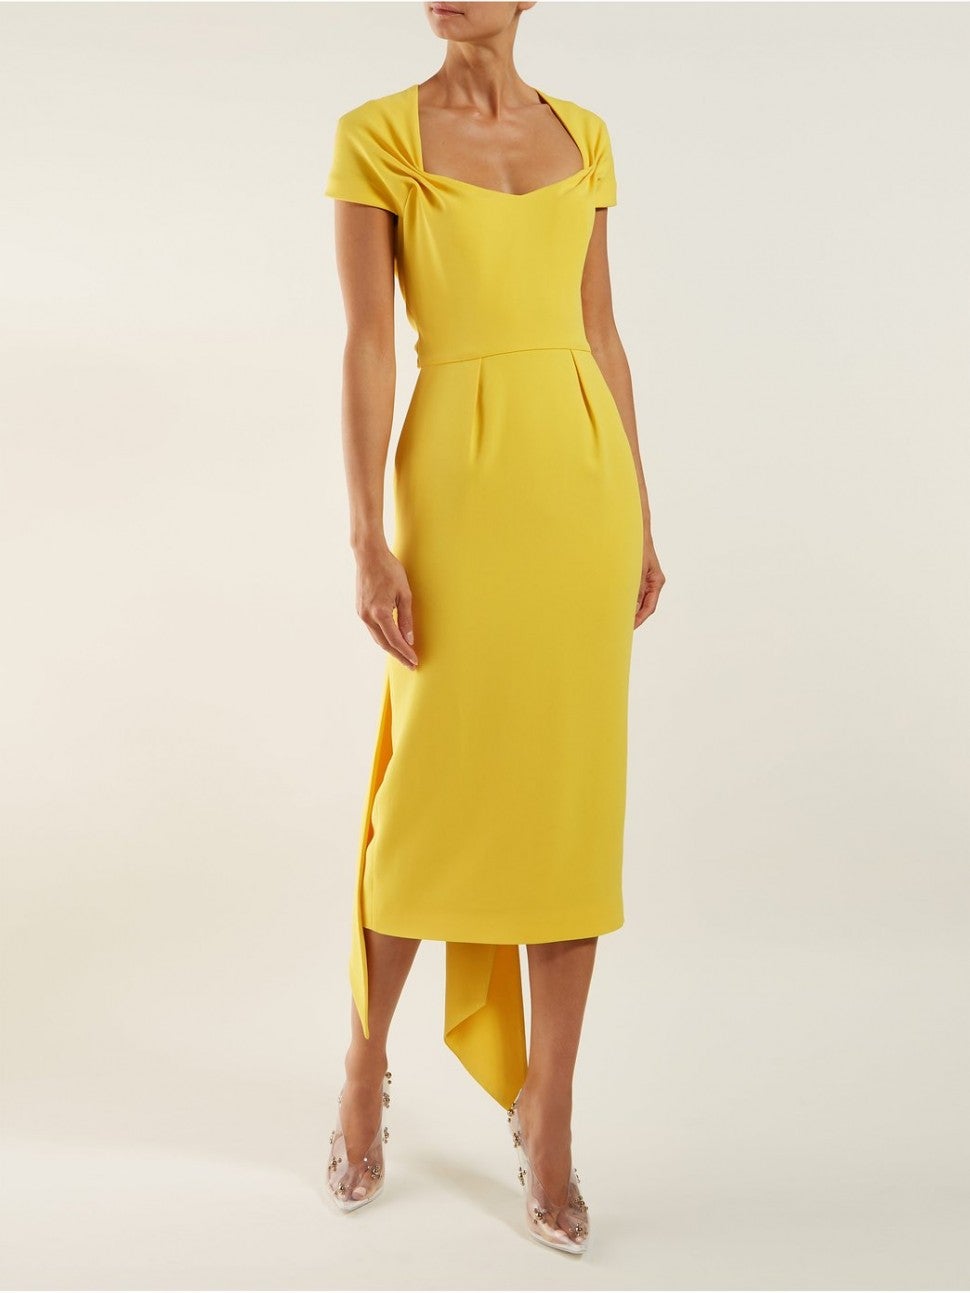 Stella McCartney yellow dress